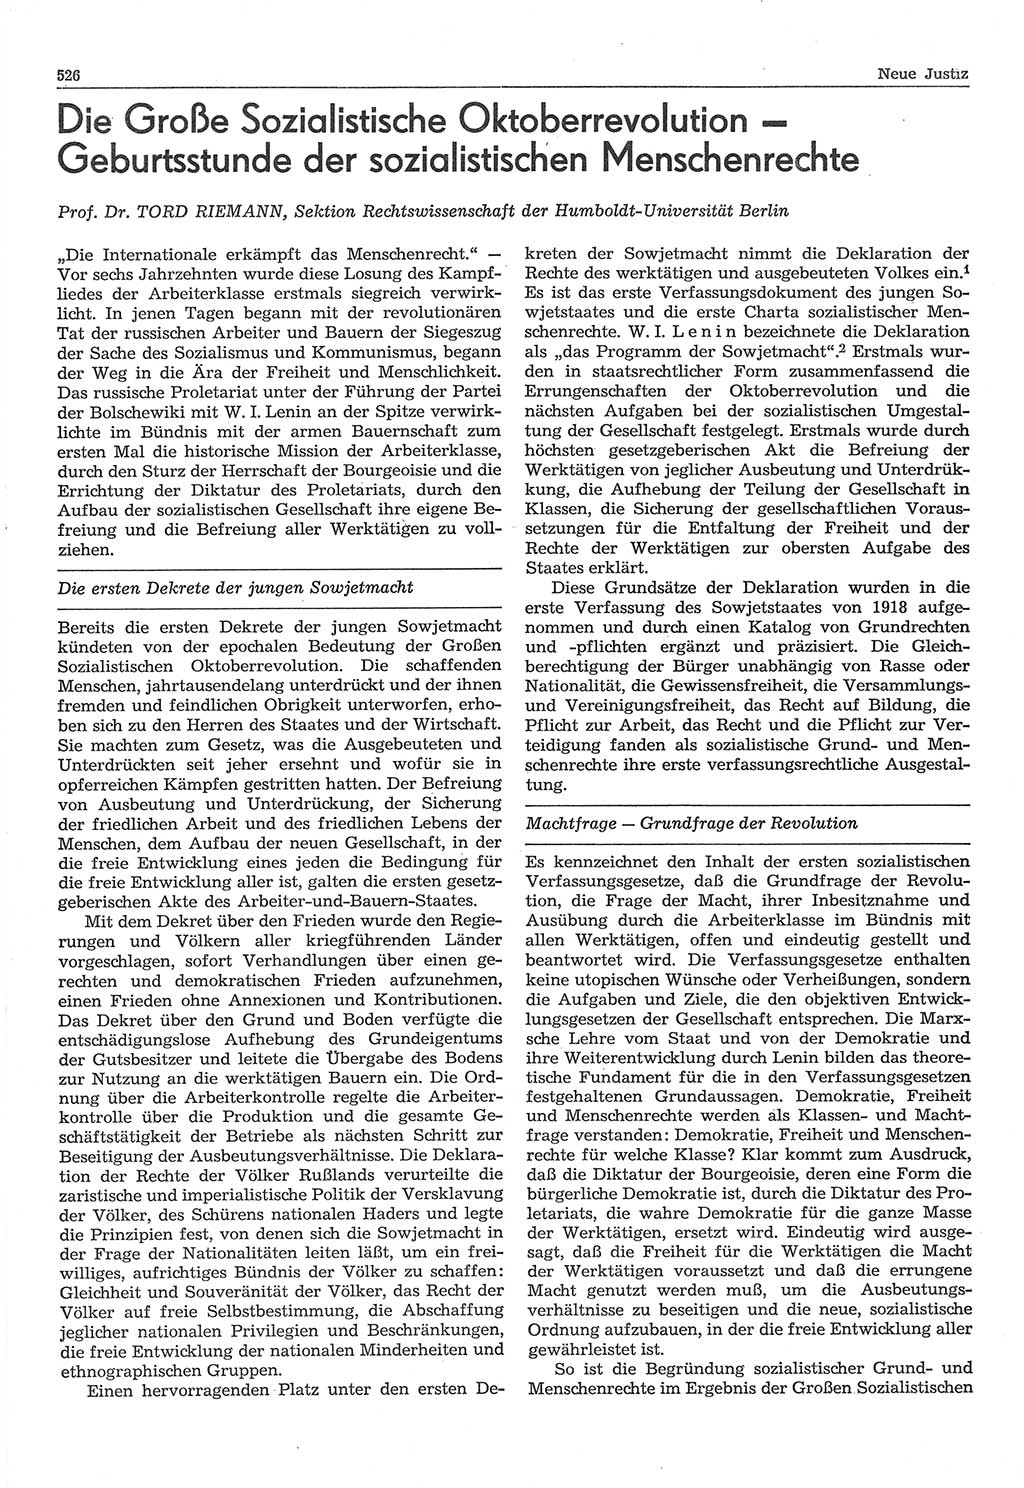 Neue Justiz (NJ), Zeitschrift für Recht und Rechtswissenschaft-Zeitschrift, sozialistisches Recht und Gesetzlichkeit, 31. Jahrgang 1977, Seite 526 (NJ DDR 1977, S. 526)